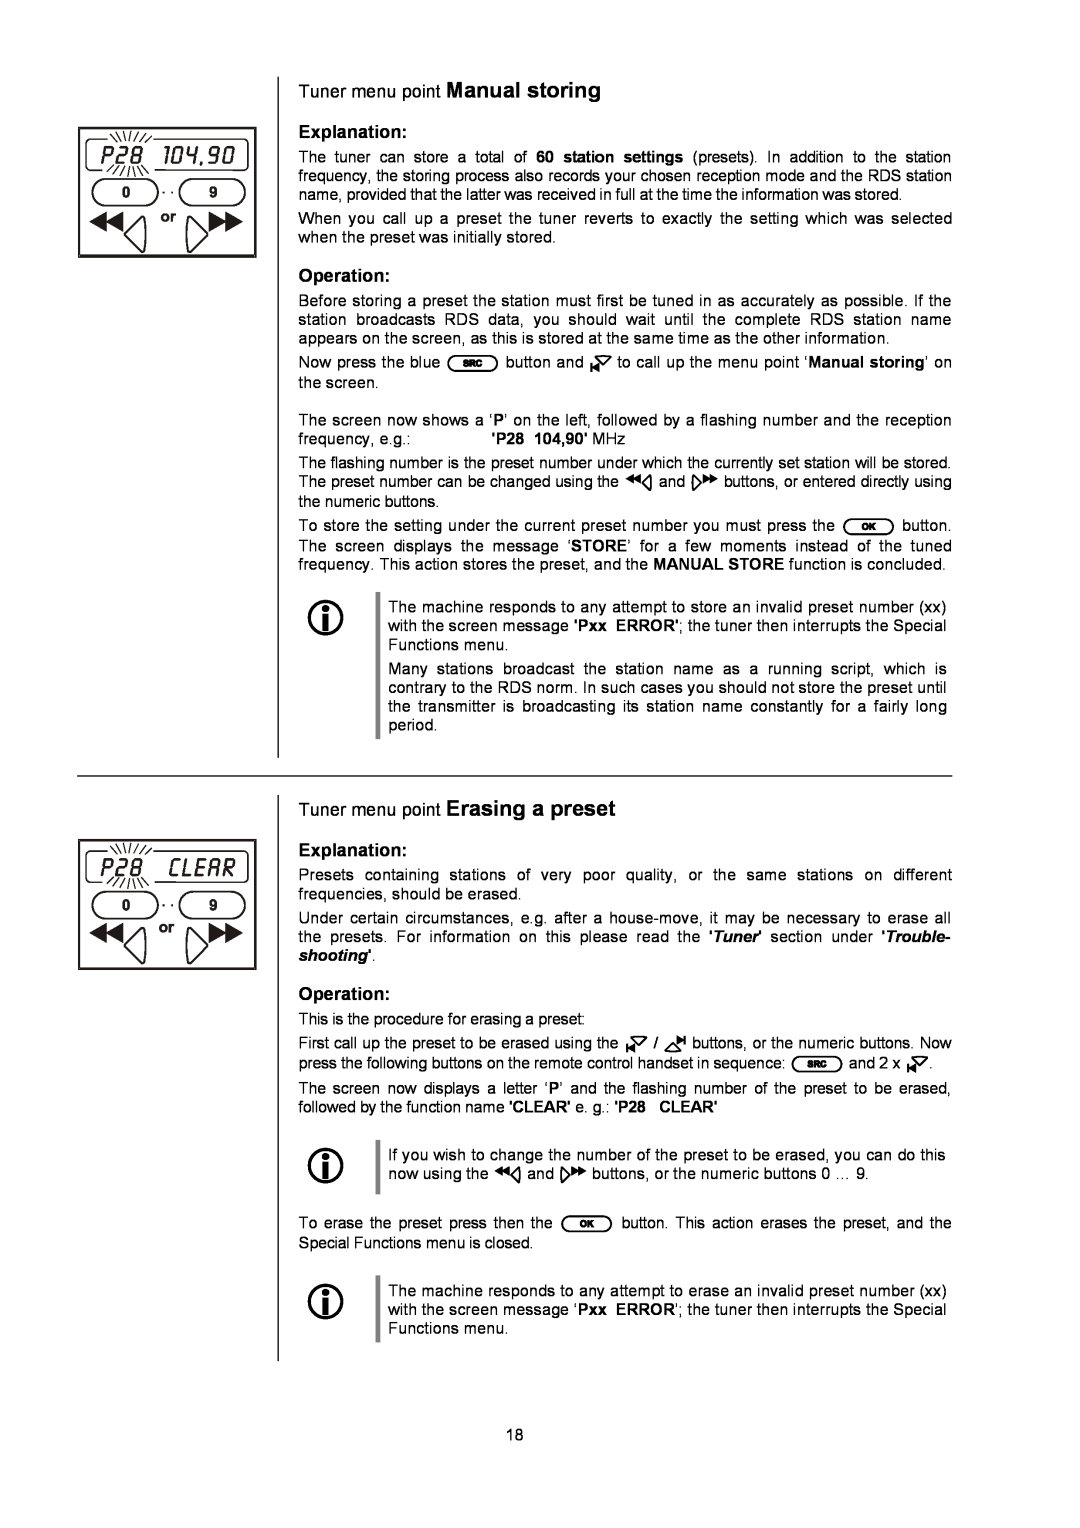 T+A Elektroakustik K1 AV Tuner menu point Manual storing, Tuner menu point Erasing a preset, Explanation, Operation 